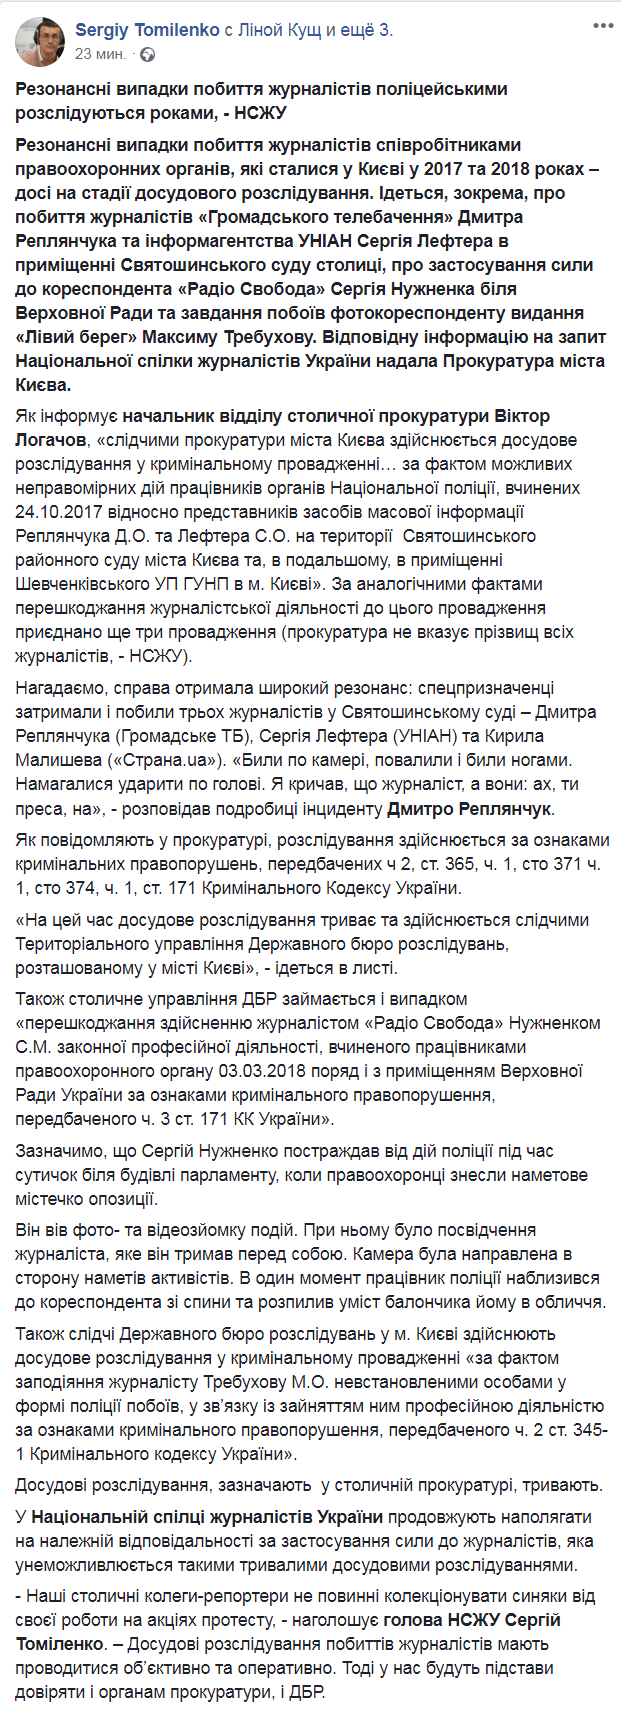 Скриншот из Facebook  Сергея Томиленко